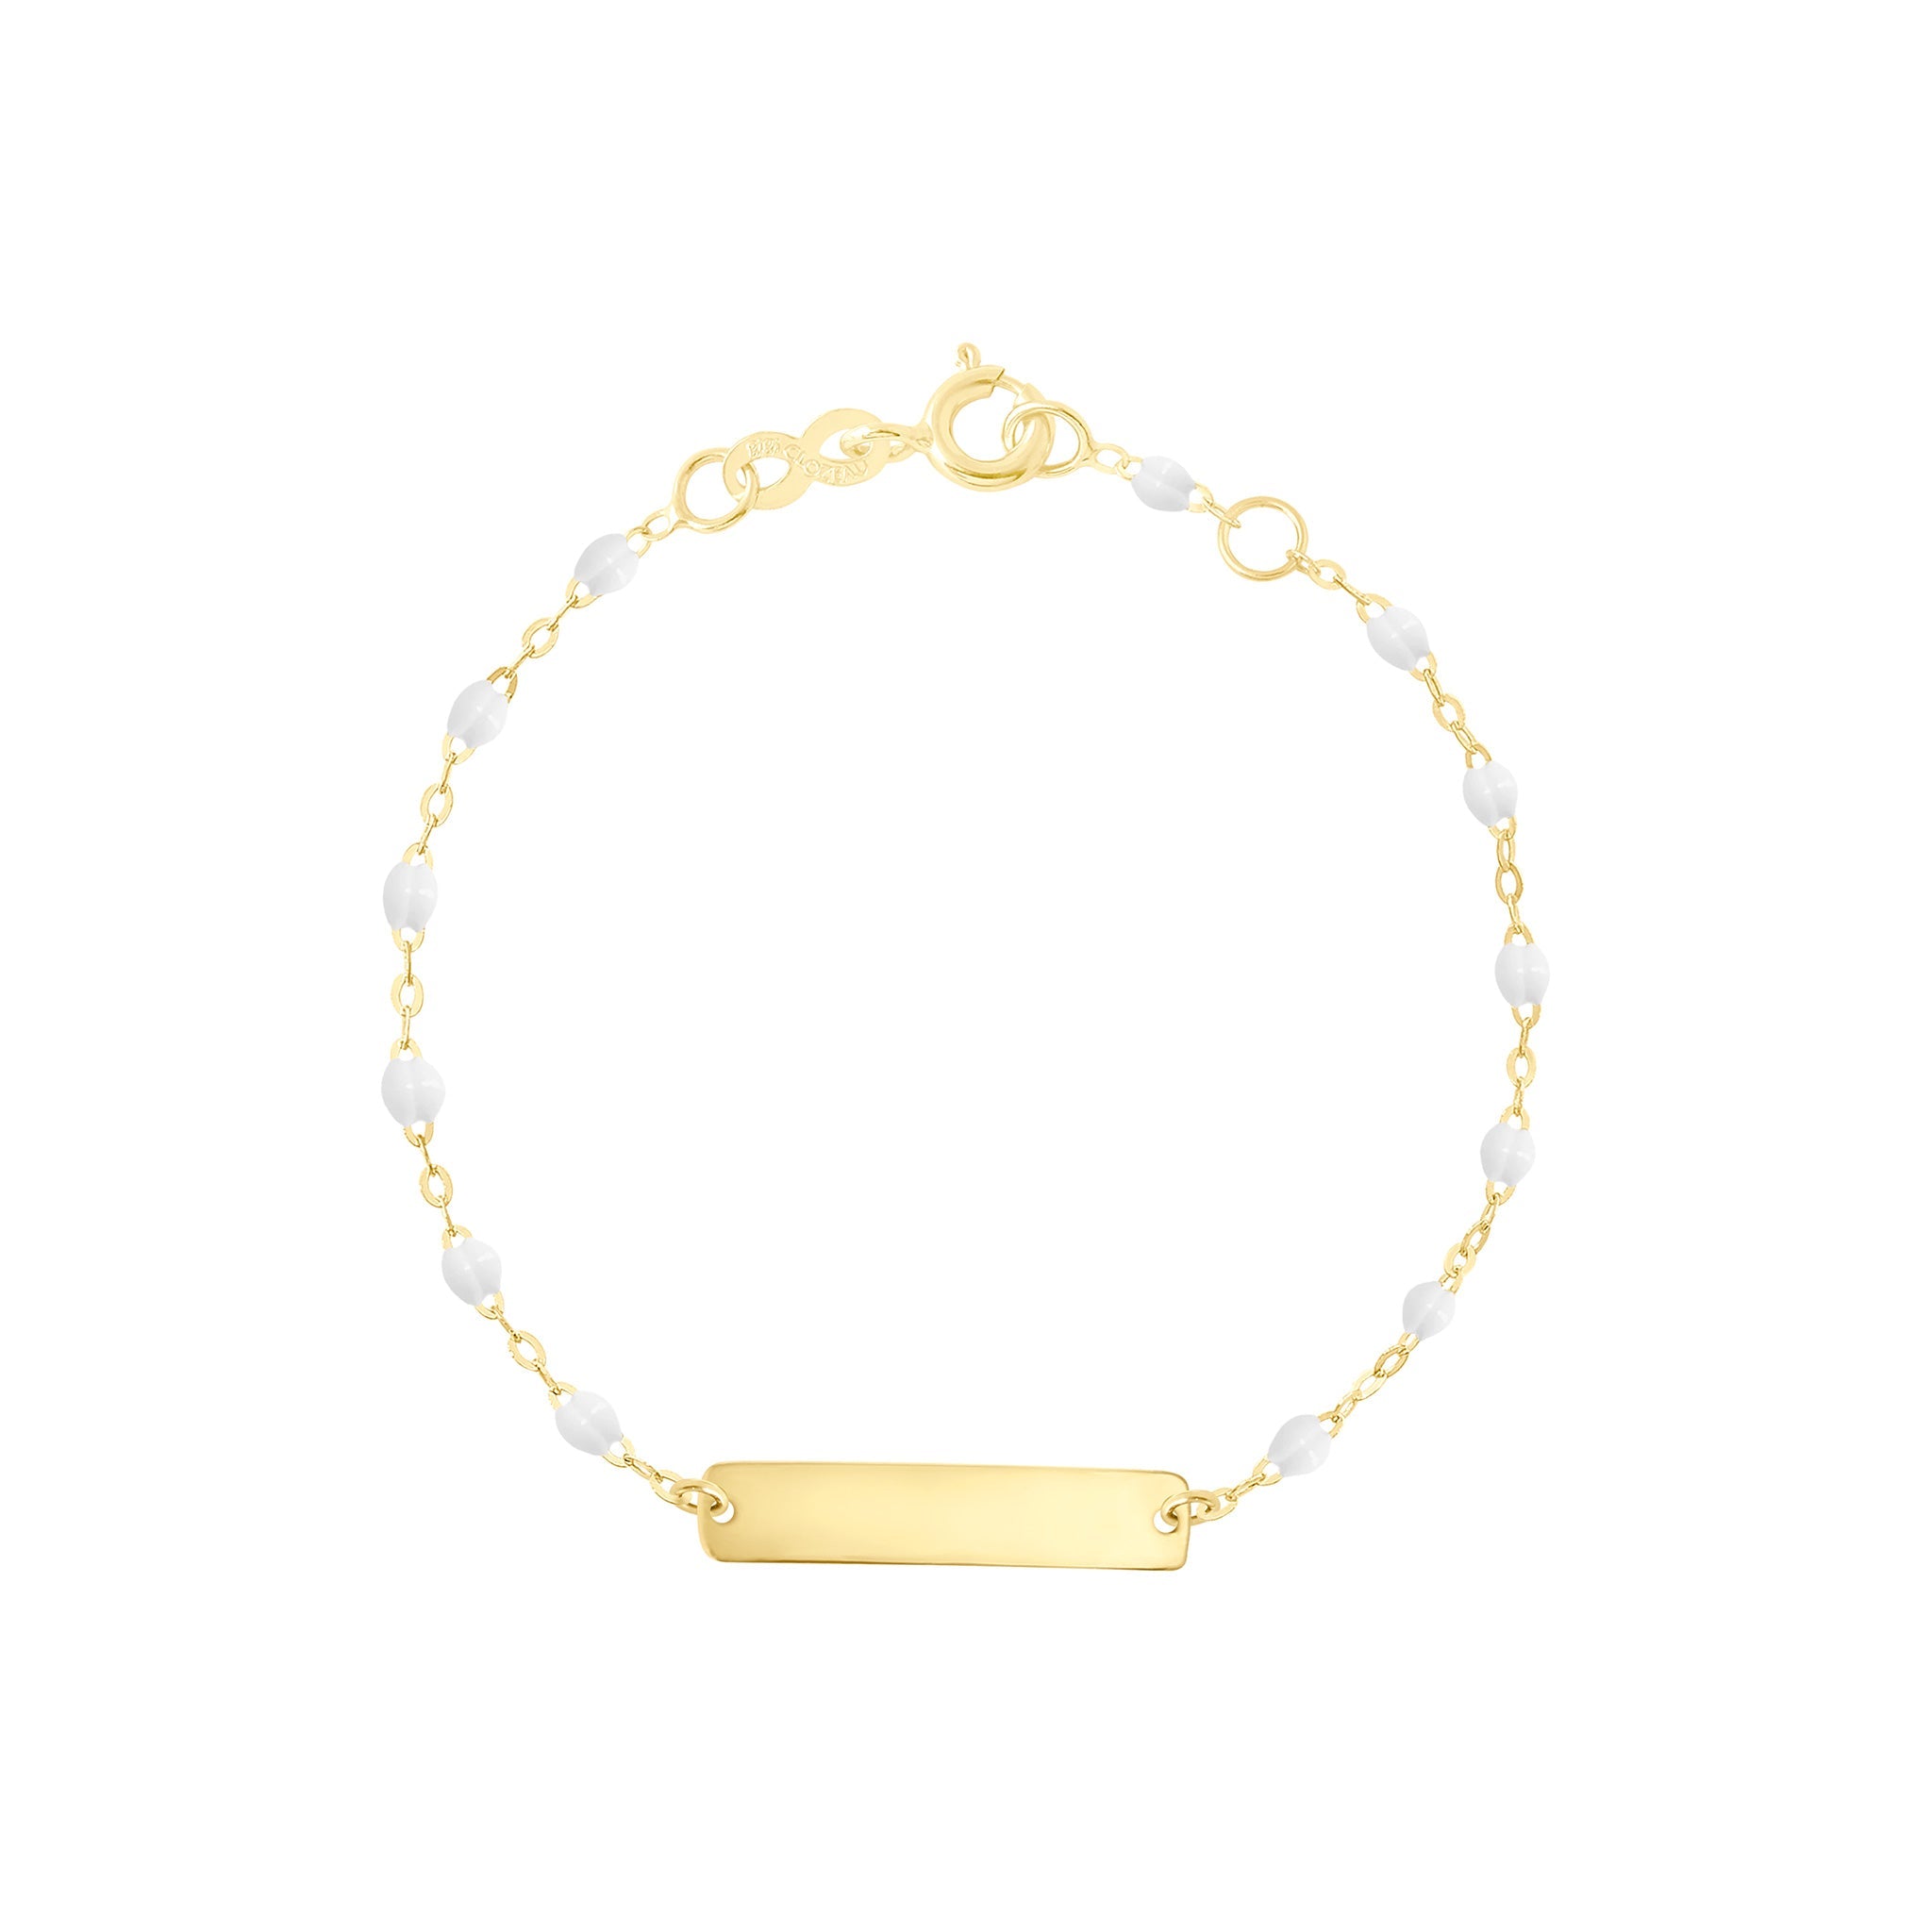 Bracelet blanc Little Gigi, plaque rectangle, or jaune, 15 cm little gigi Référence :  b3lg001j0115xx -1